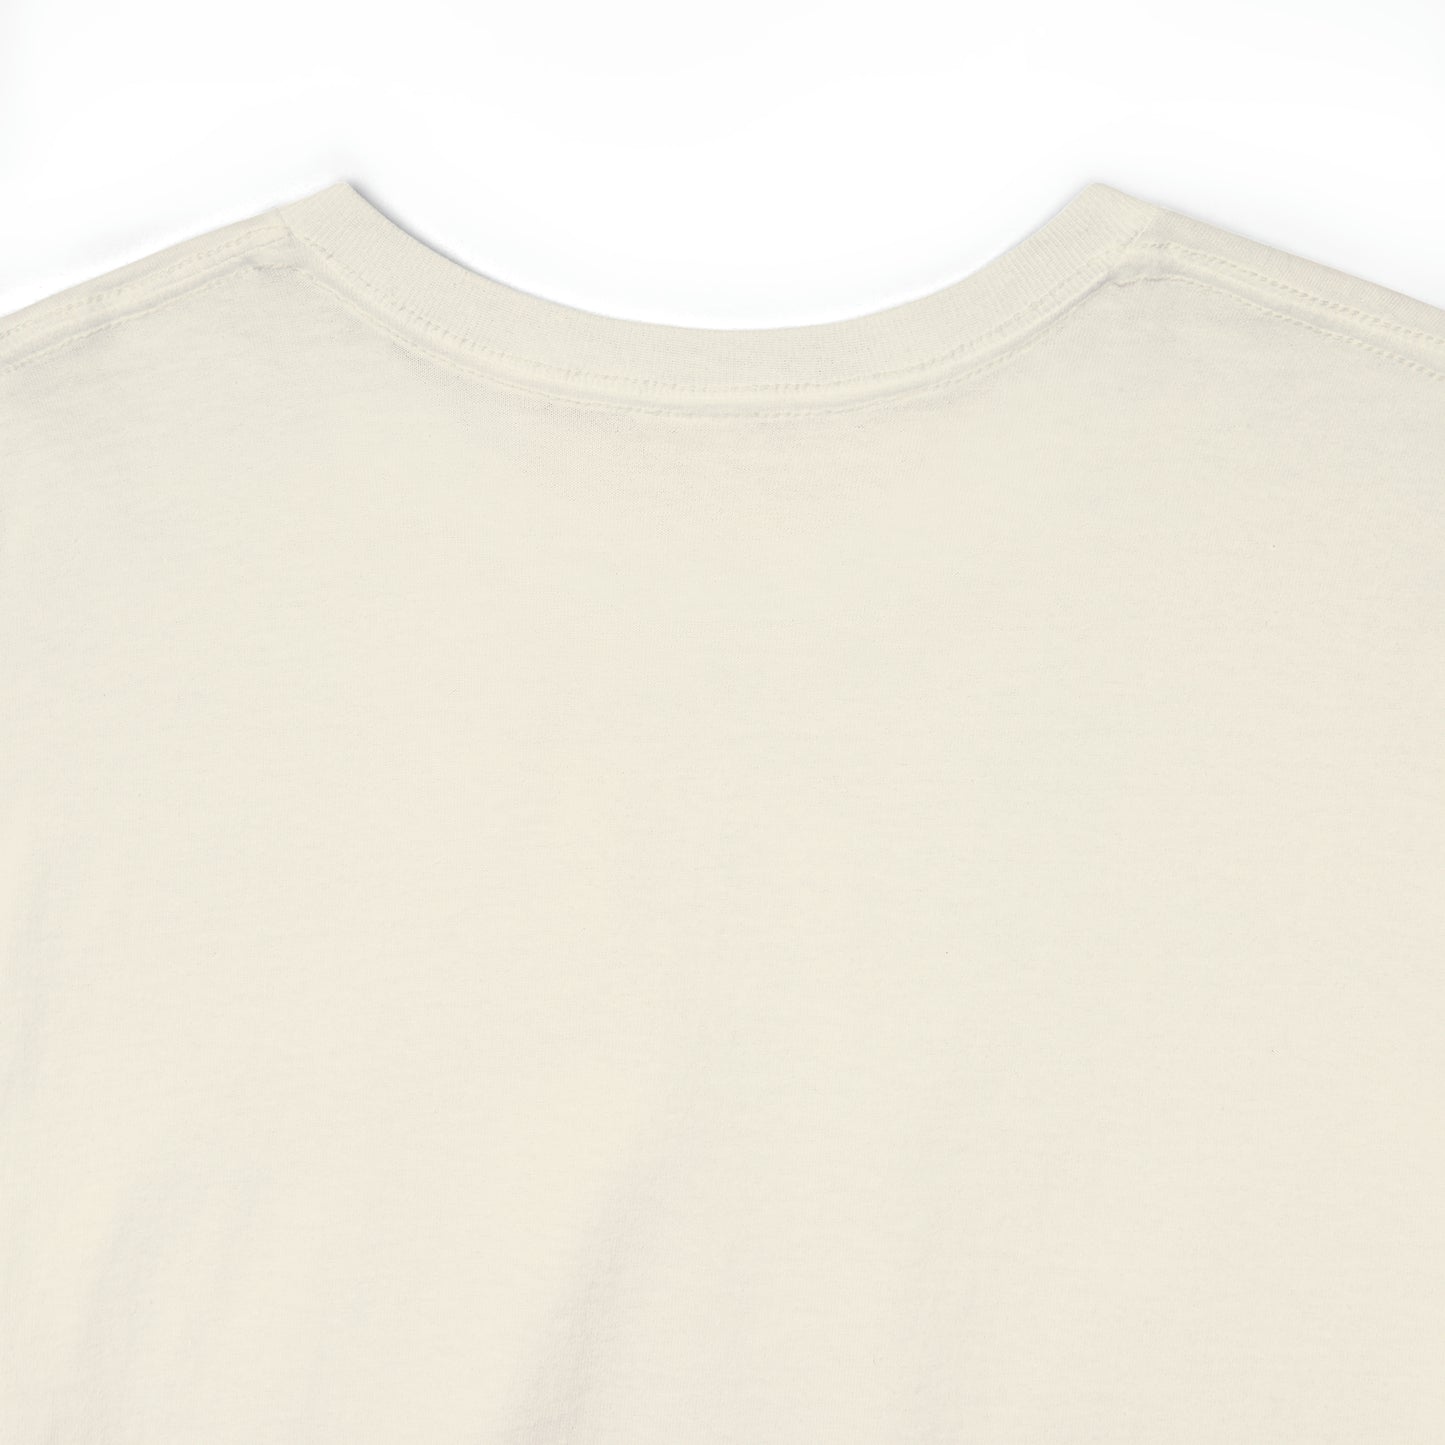 Butterfinger T-Shirt